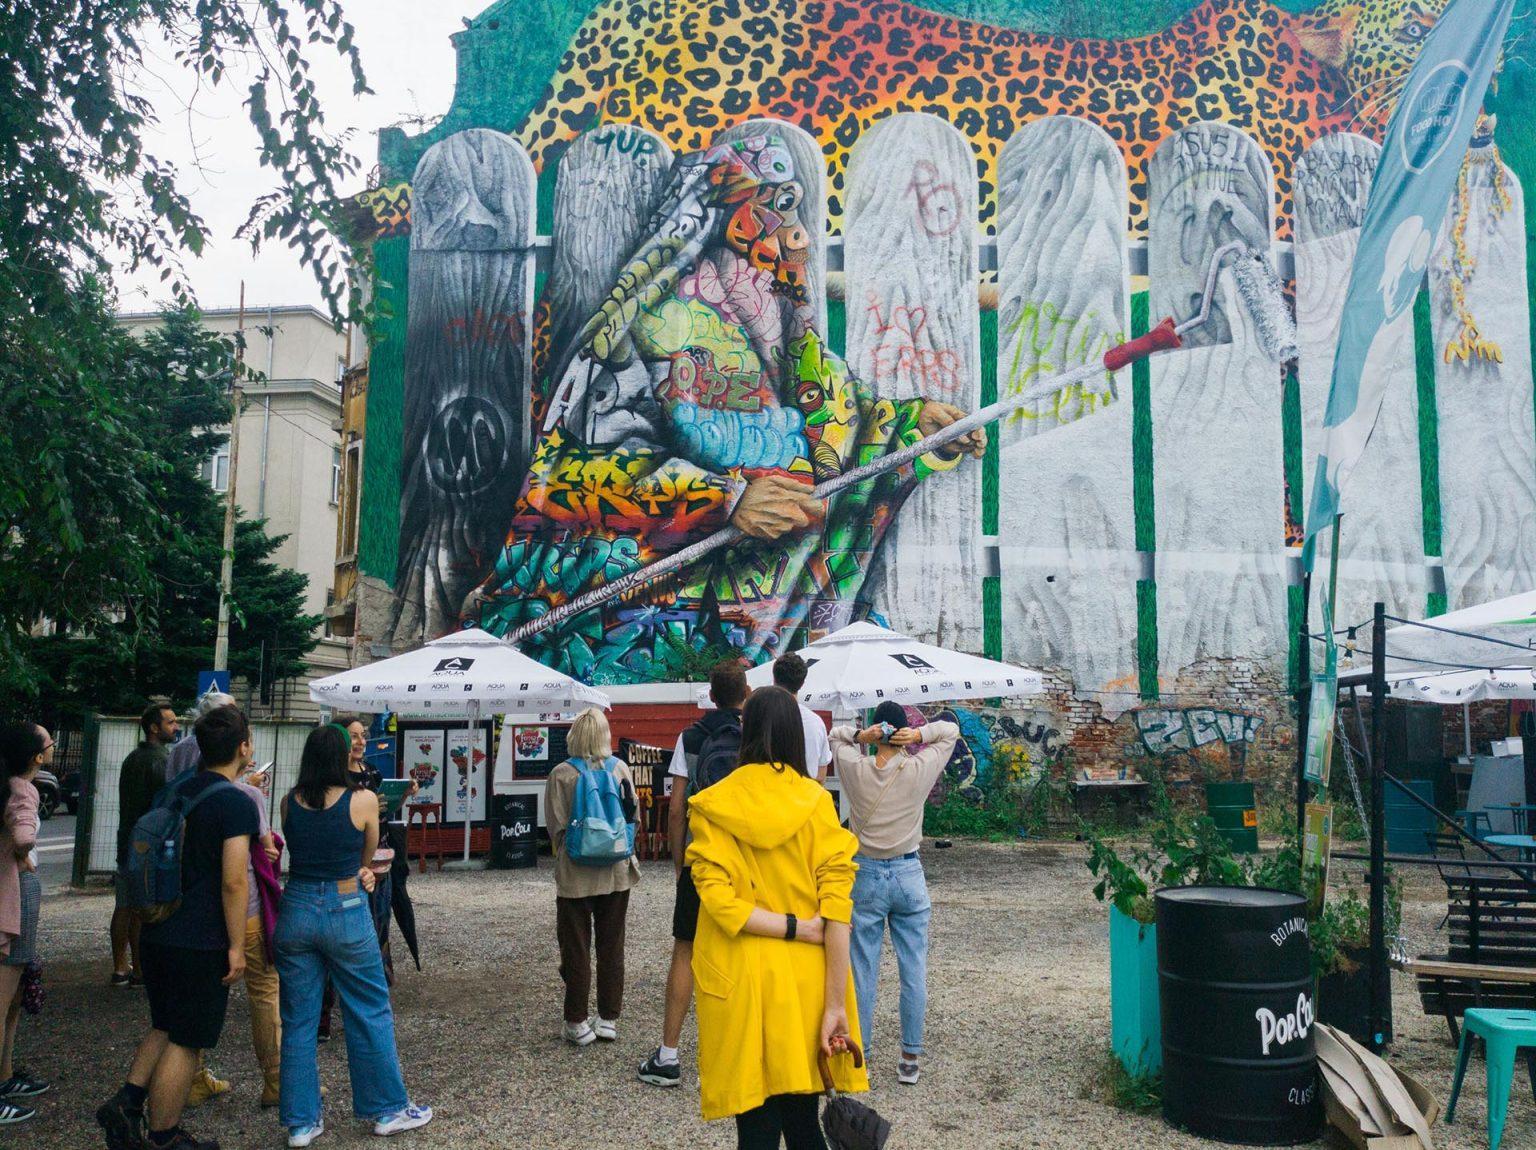 Un-hidden Romania street art tour II / 2022